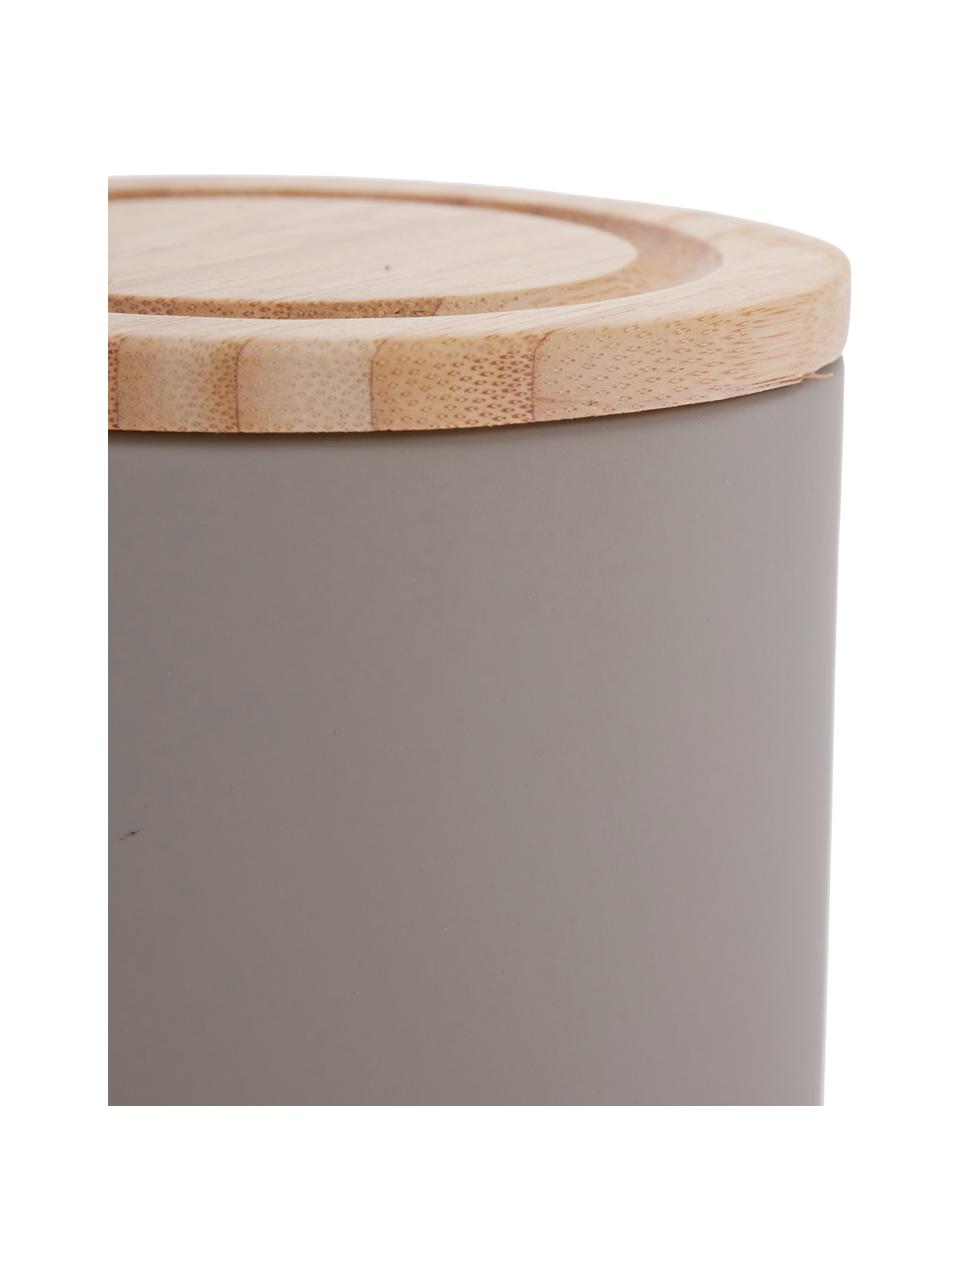 Opbergpot Stak, verschillende formaten, Pot: keramiek, Deksel: bamboehout, Steengrijs, bamboe, Ø 10 x H 13 cm